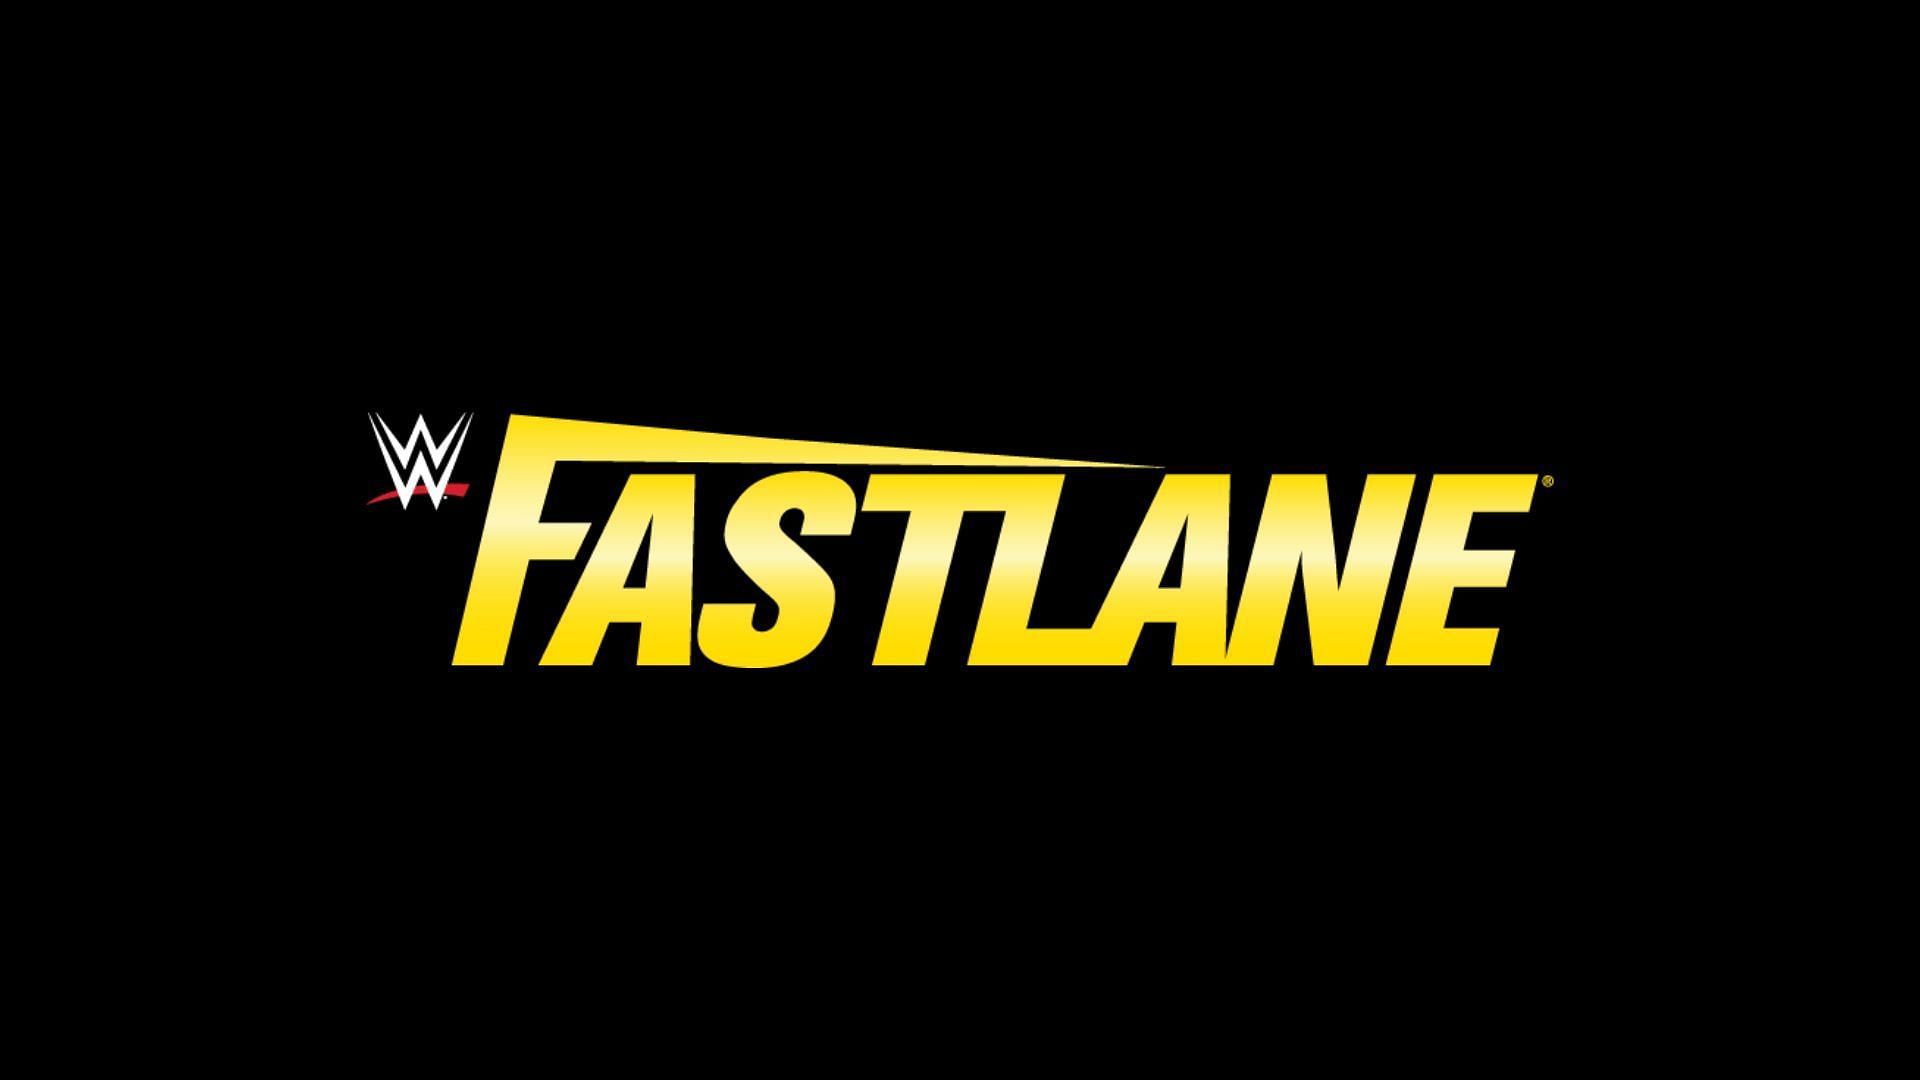 WWE Fastlane scheduled to take place next WWEK